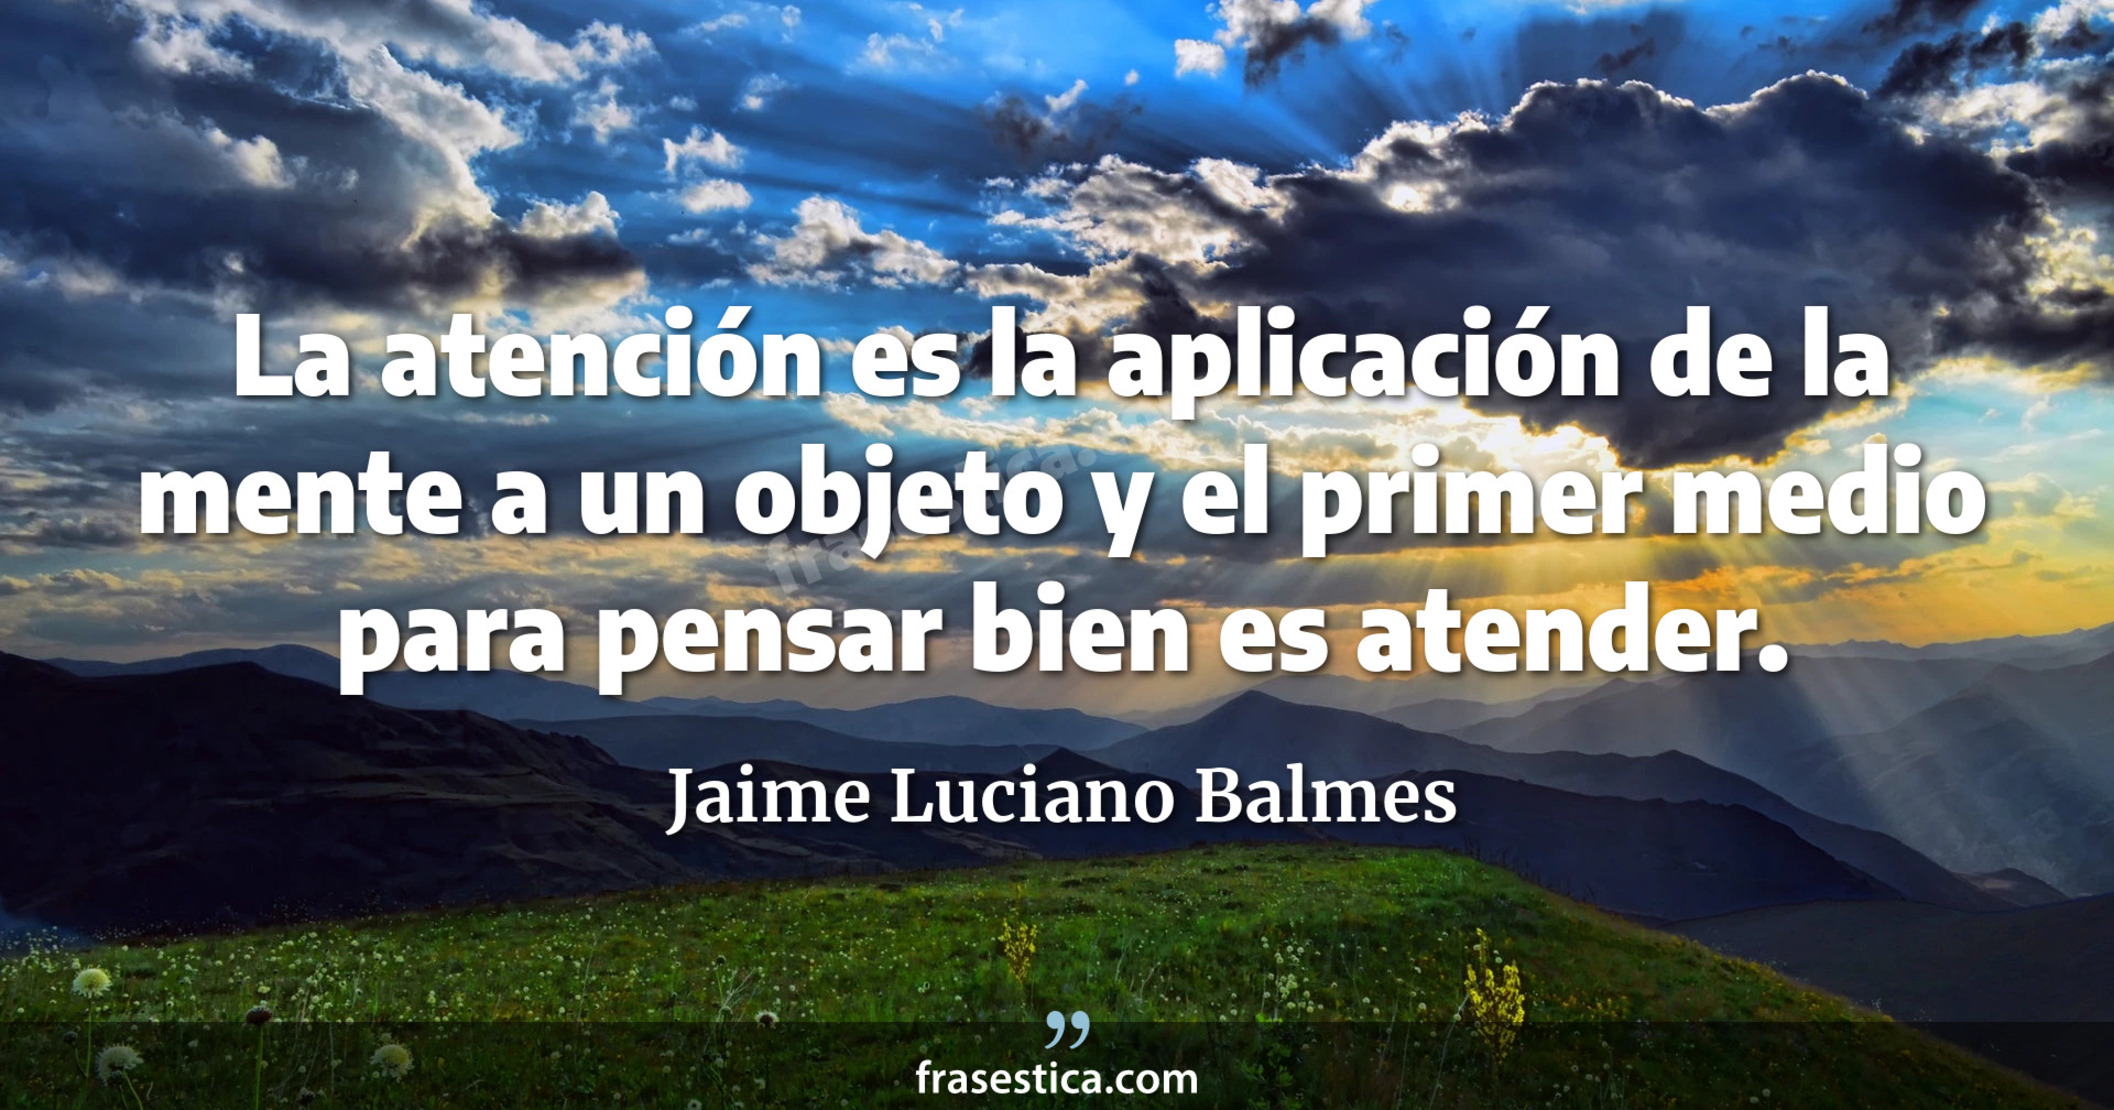 La atención es la aplicación de la mente a un objeto y el primer medio para pensar bien es atender.  - Jaime Luciano Balmes